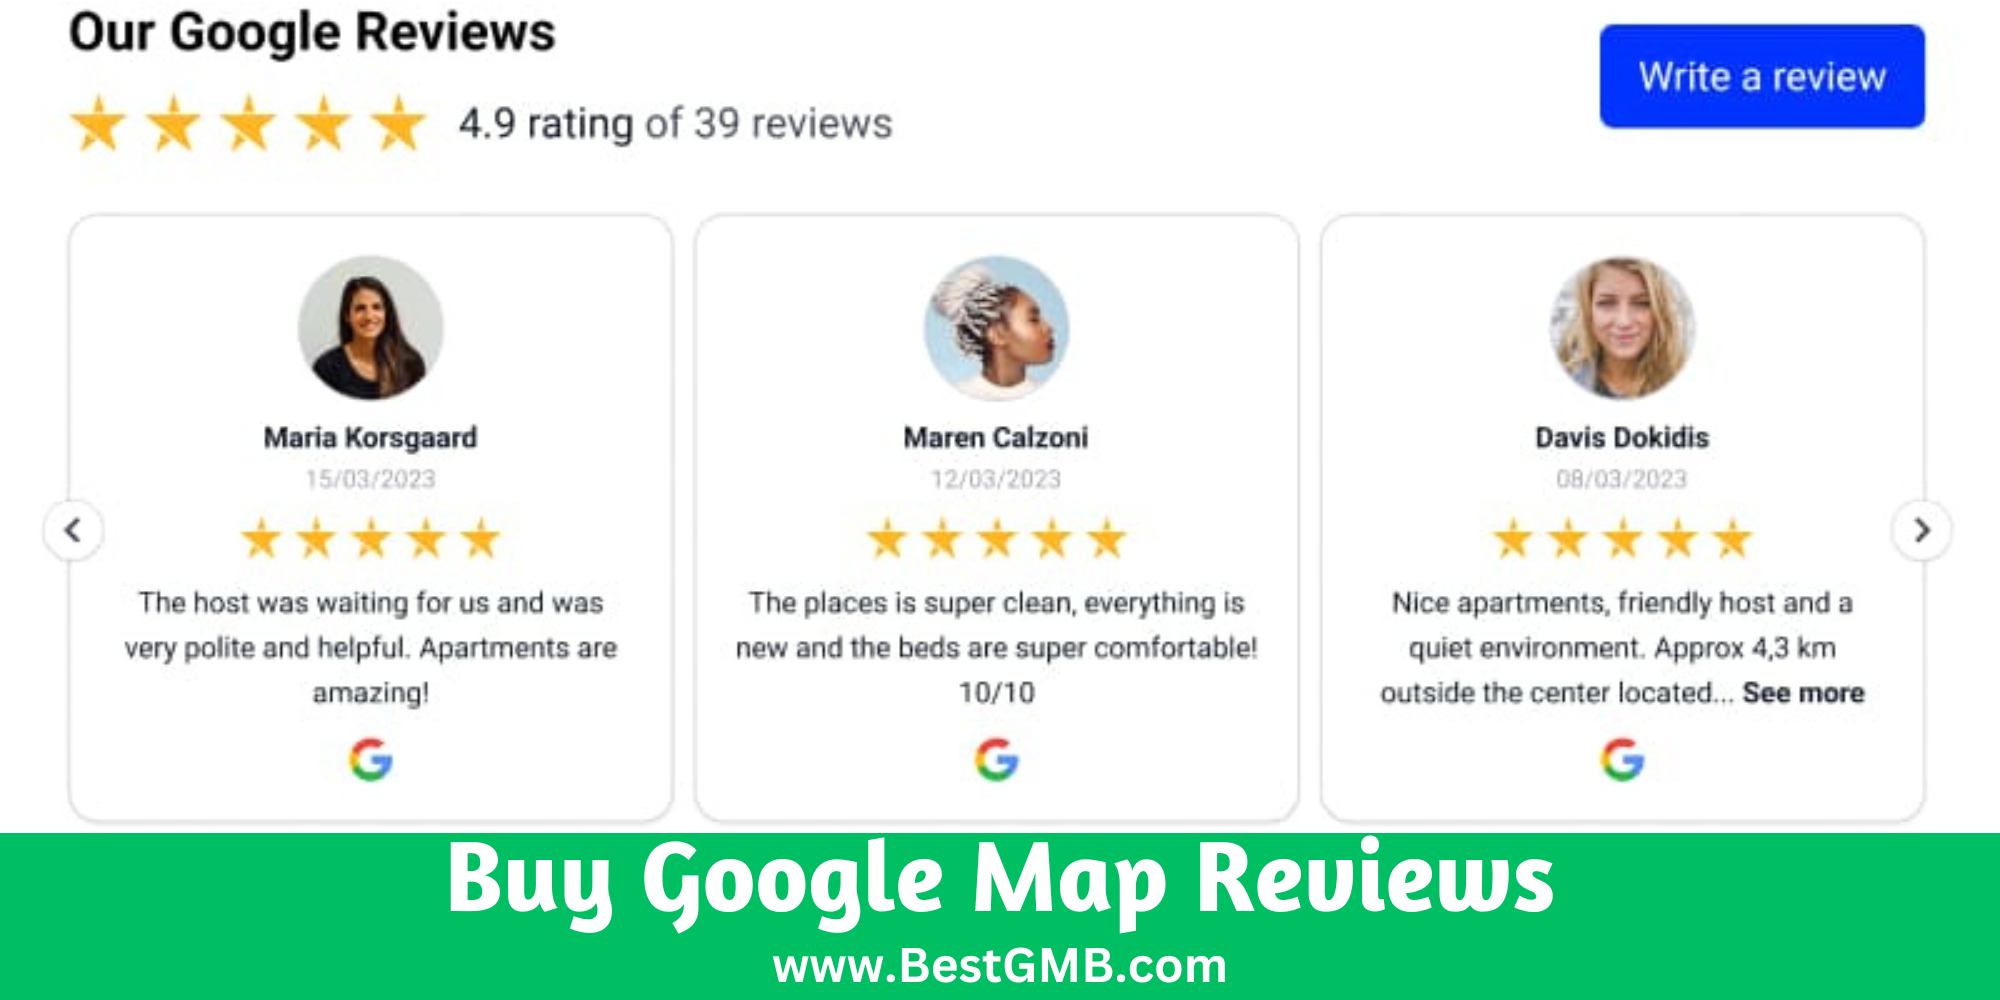 Buy Google Map Reviews